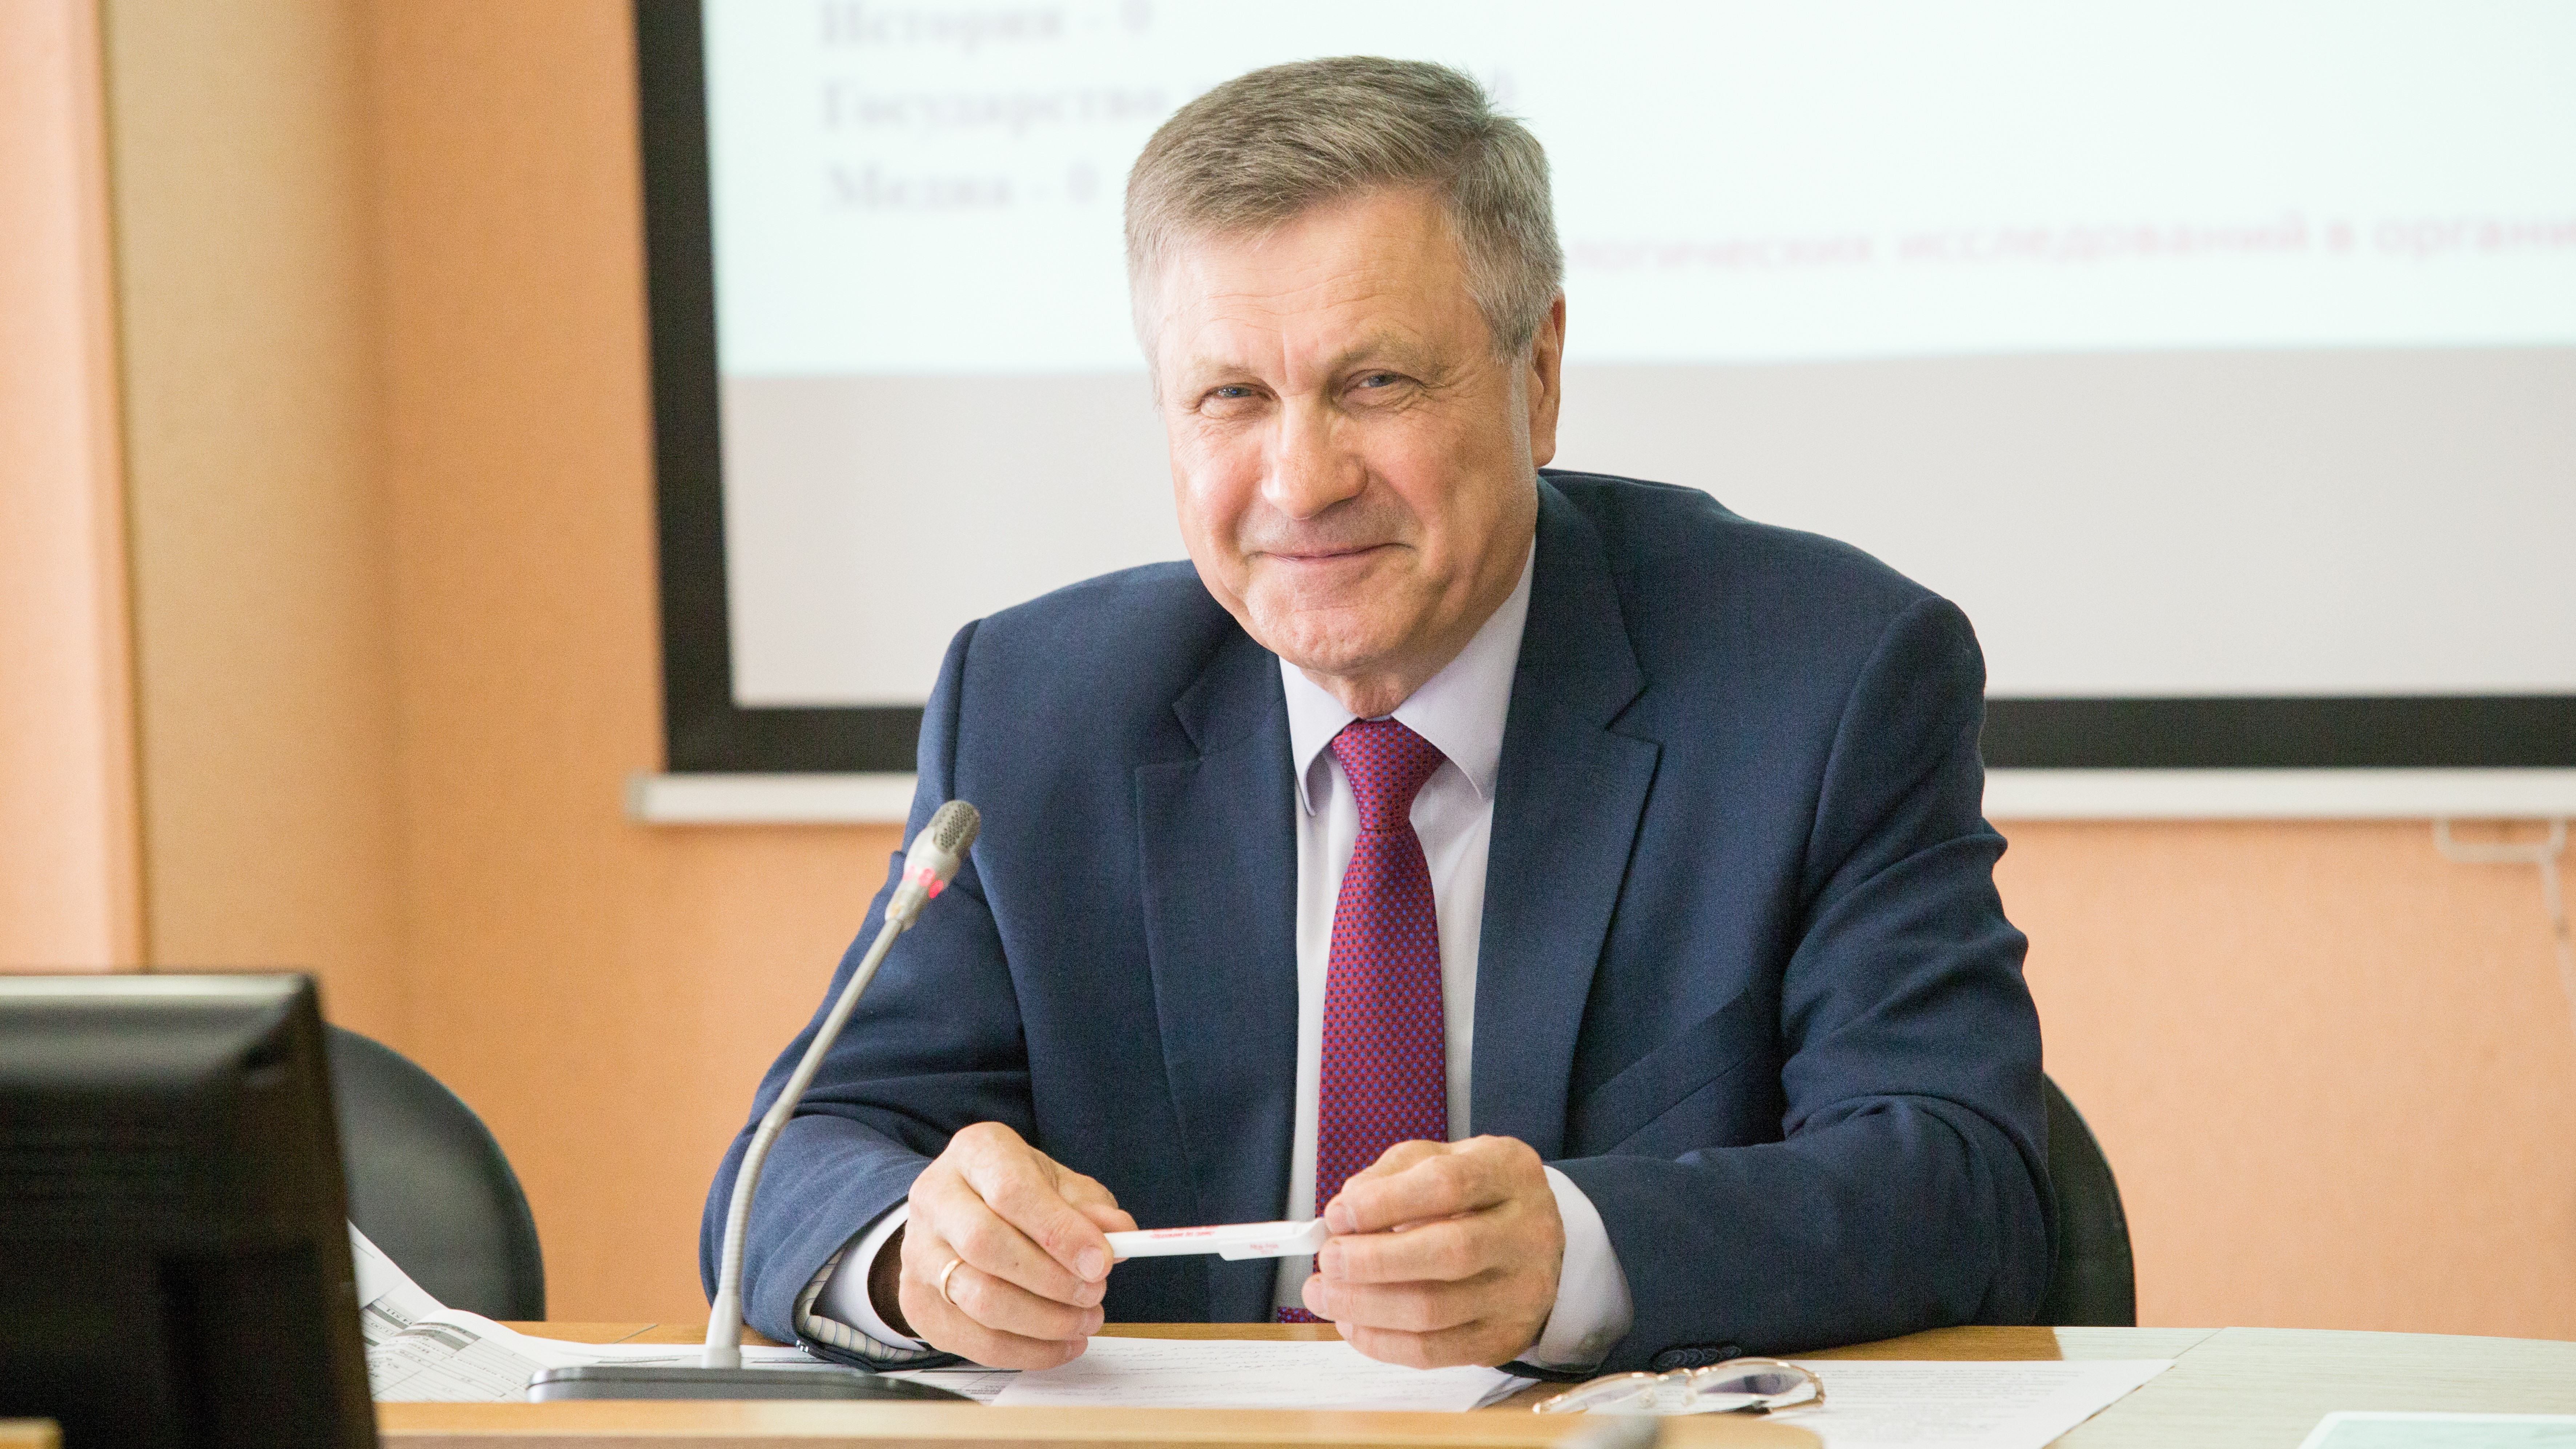 Руководитель НОЦ «Большой Алтай» поздравляет коллег с Днем российской науки